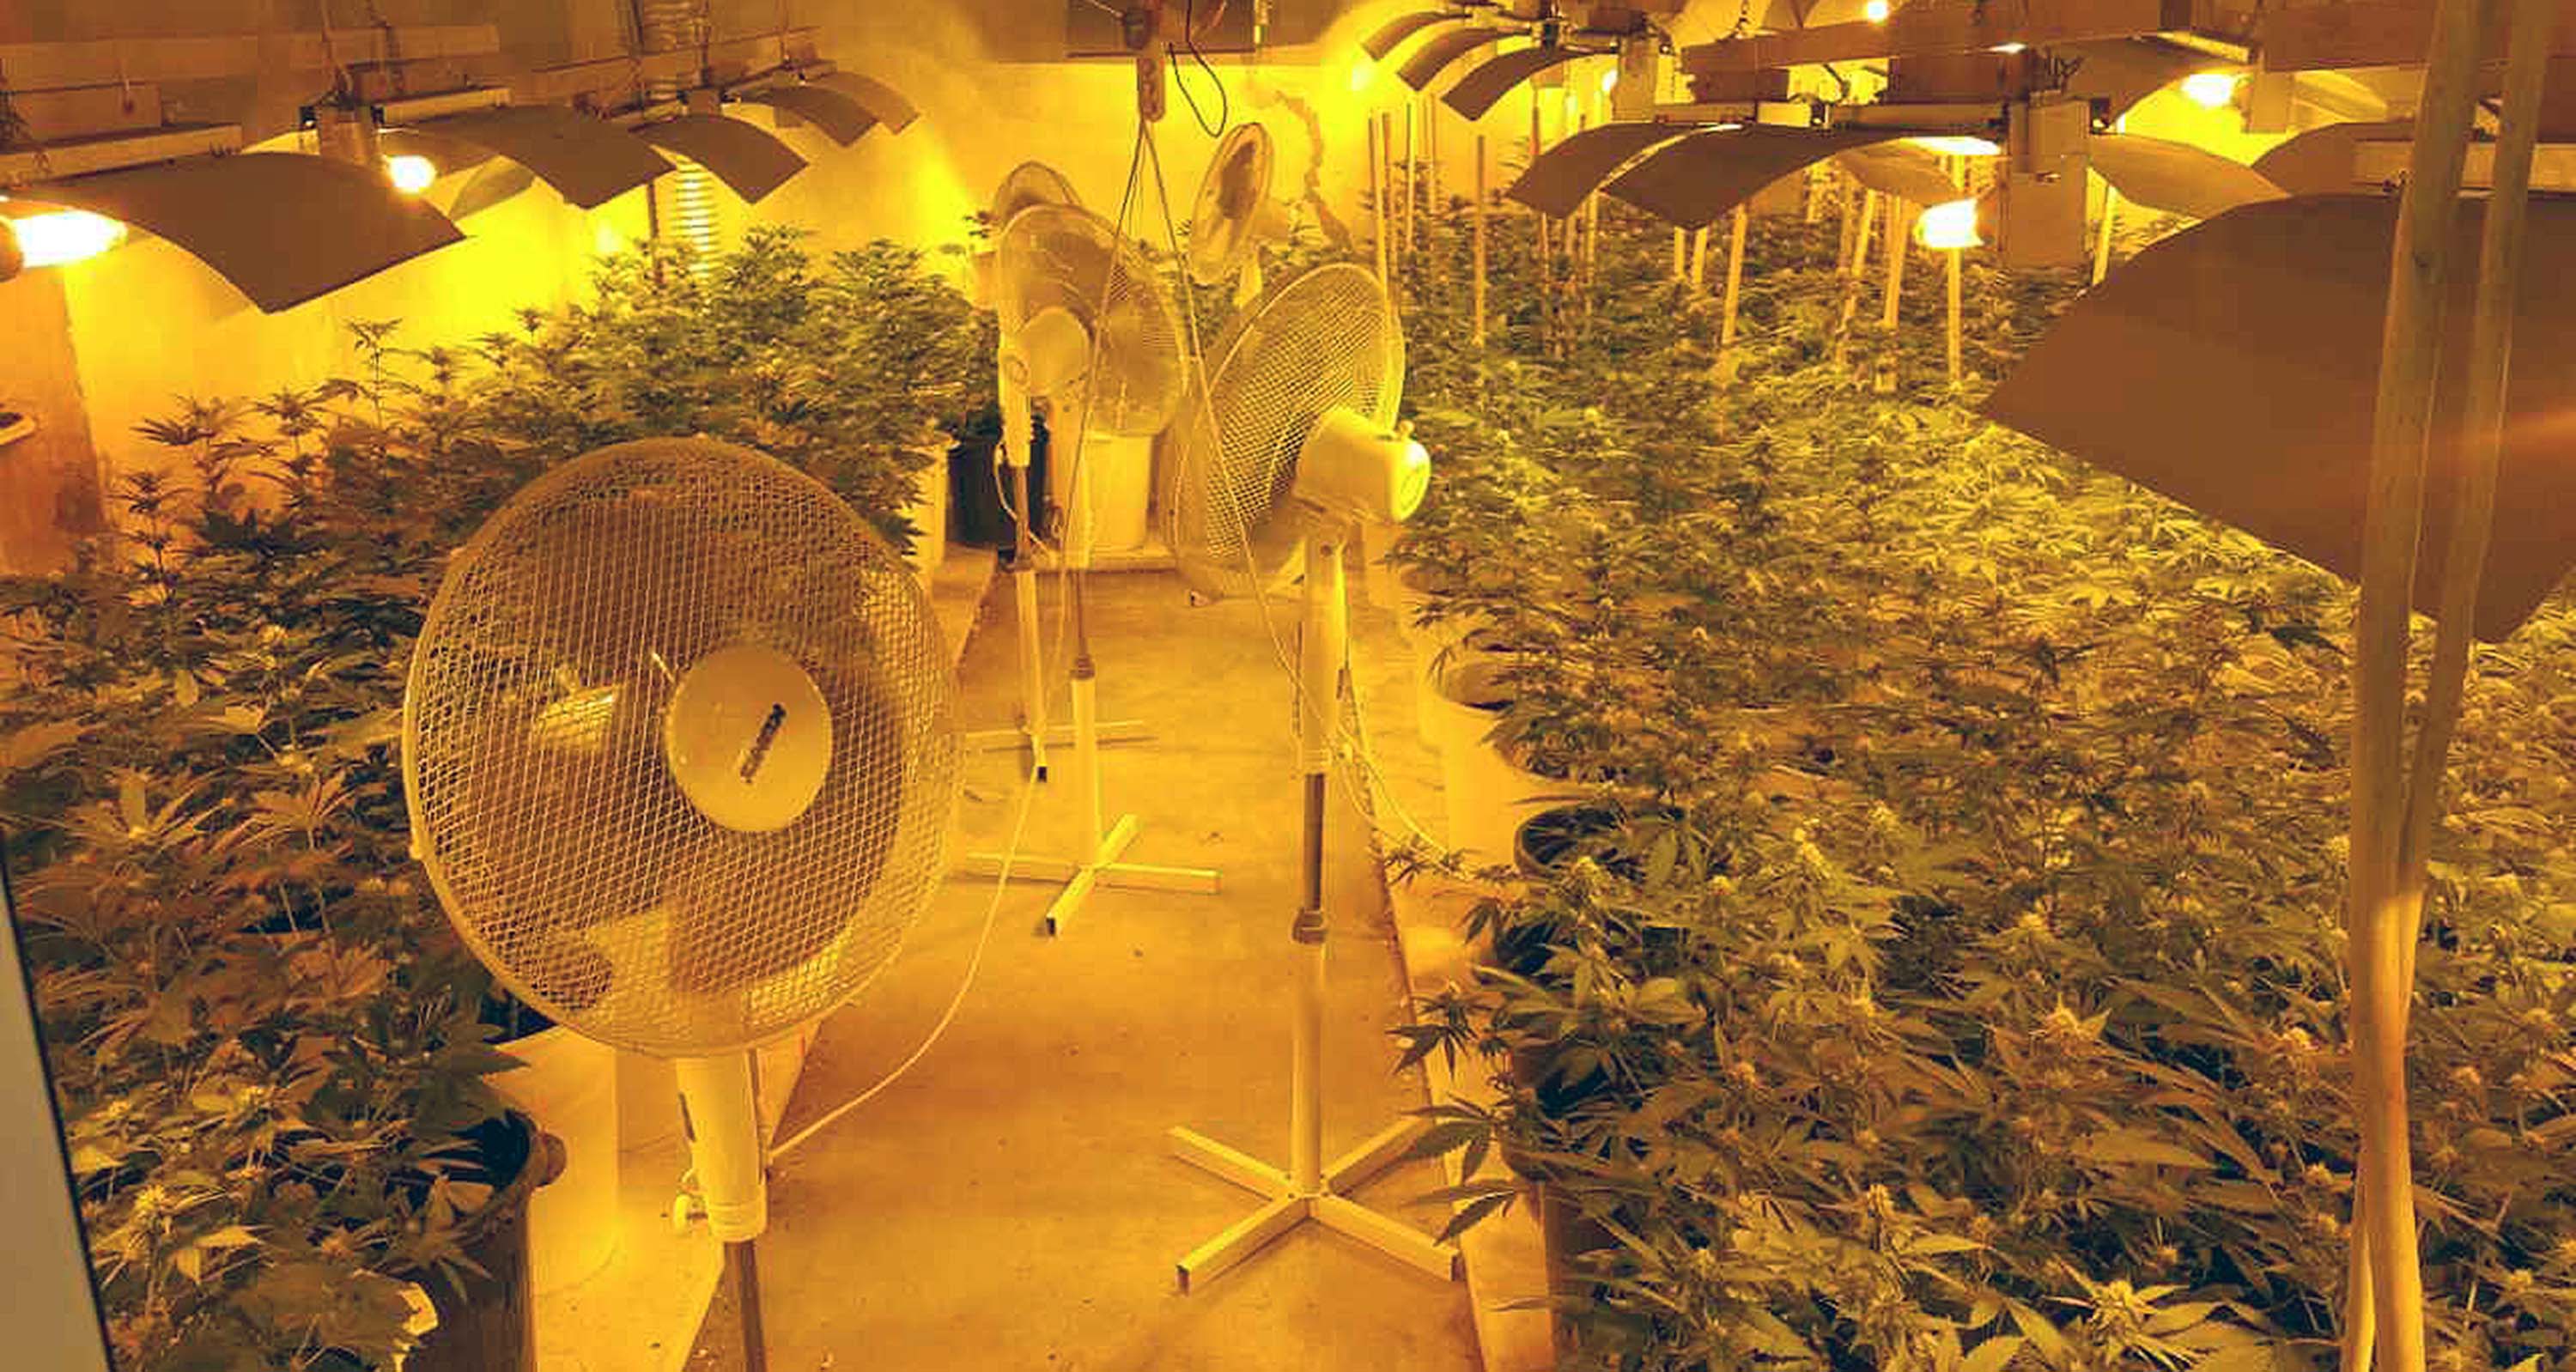 Otkriveno pet laboratorija za uzgoj marihuane, zaplena više od 1.500 sadnica i 10 kilograma opojne droge